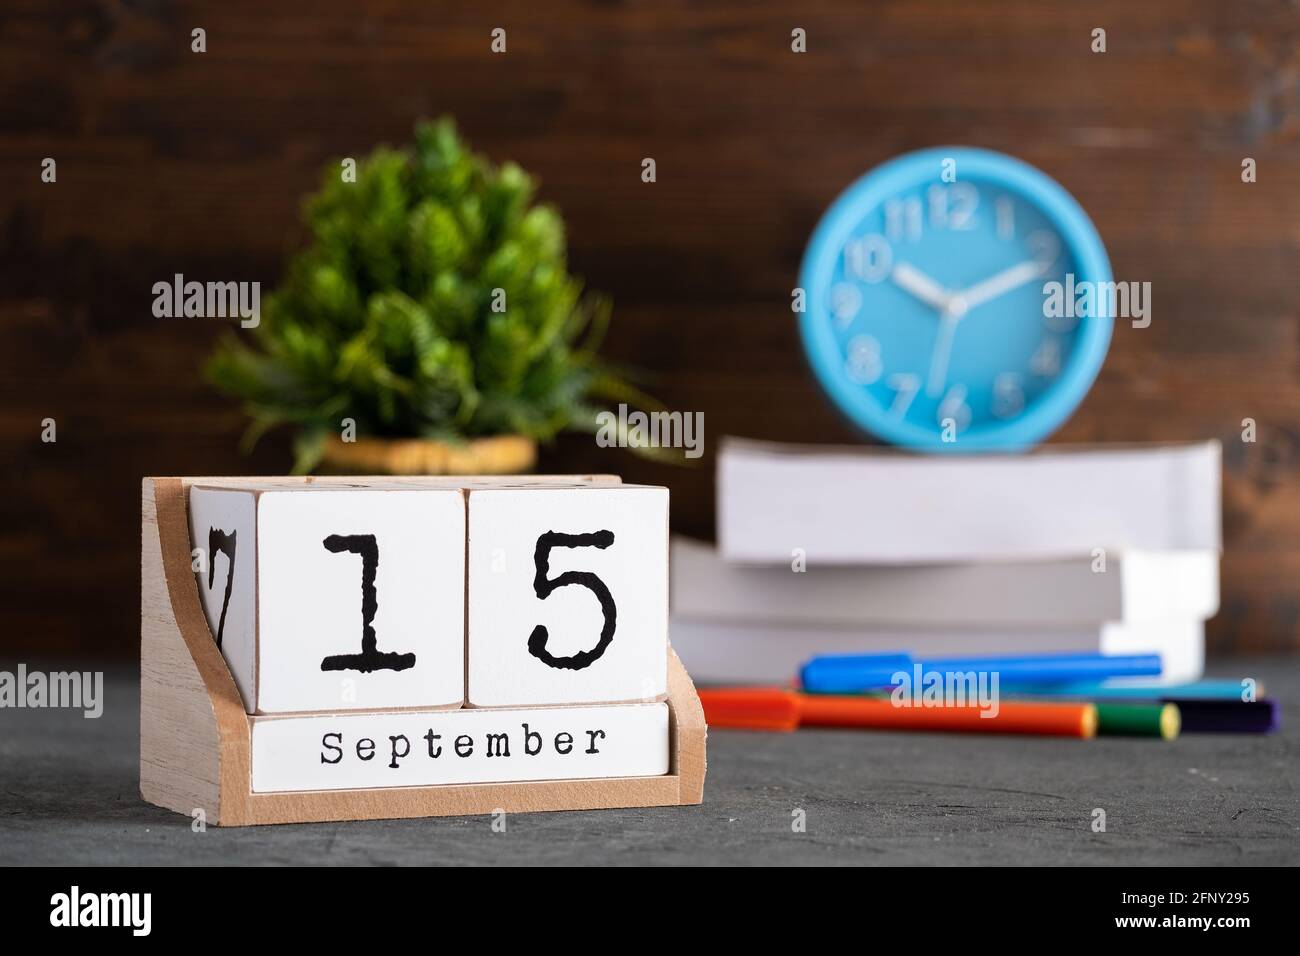 15 septembre. Septembre 15 calendrier cube en bois avec des objets flous sur fond. Banque D'Images